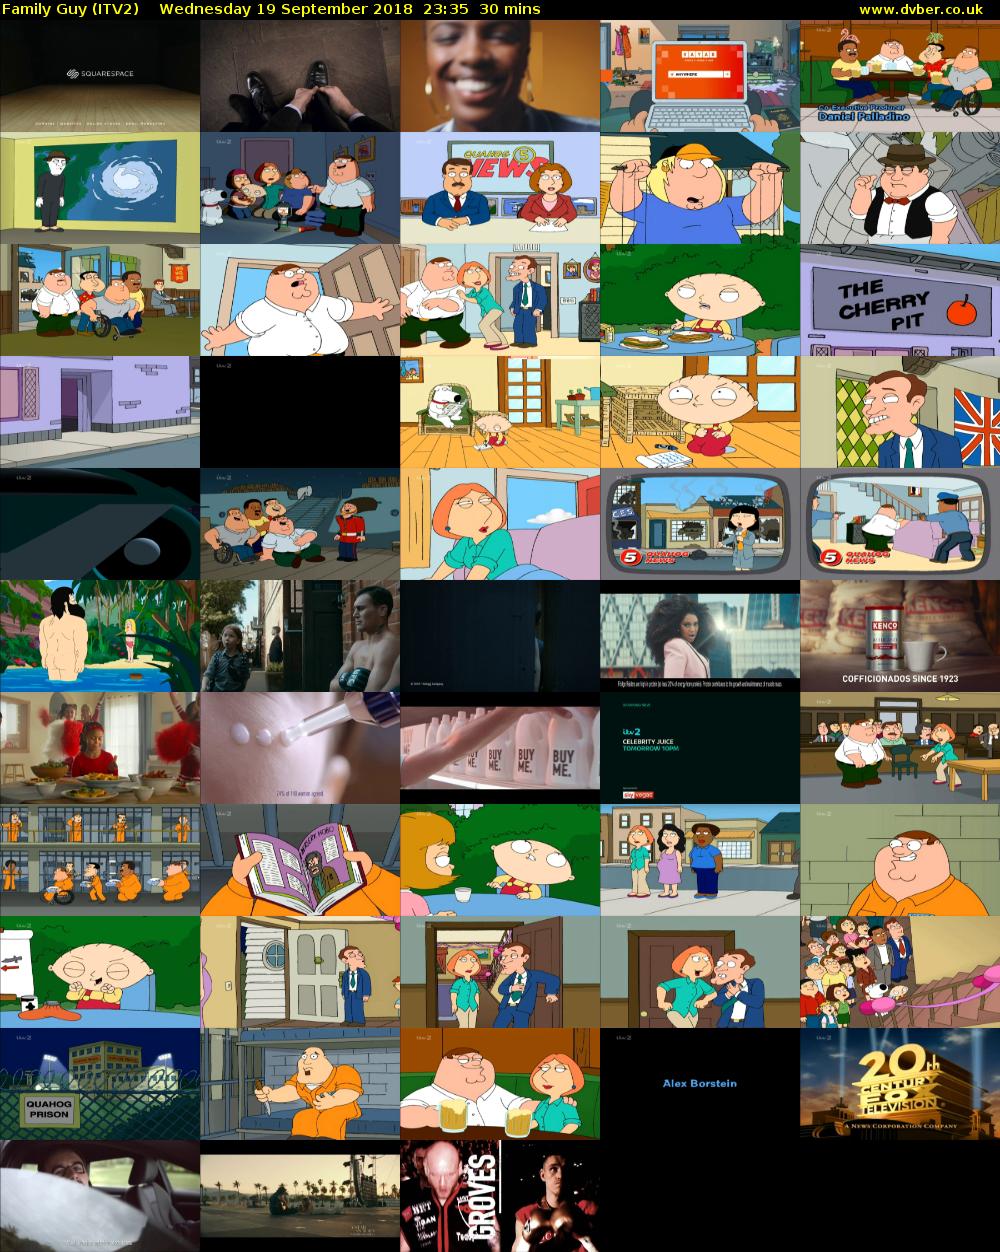 Family Guy (ITV2) Wednesday 19 September 2018 23:35 - 00:05